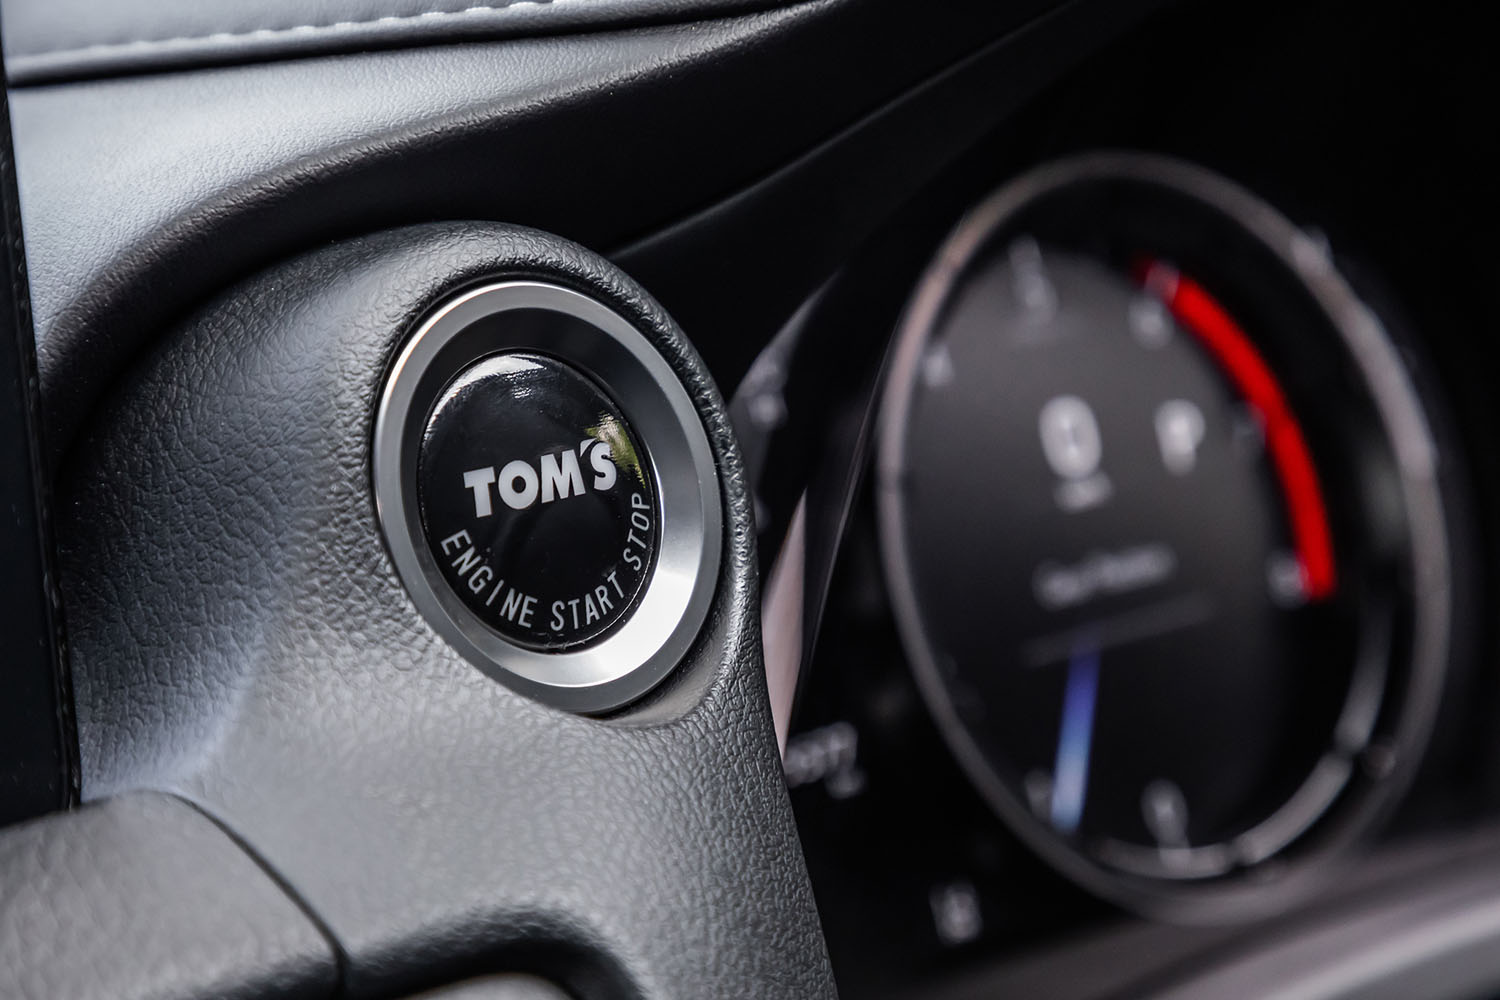 インストゥルメントパネルは基本的に標準車のまま。唯一、メーターパネル横に配置されるプッシュスタートボタンが「TOM'S」のロゴ入りアイテムでカスタマイズされていた。